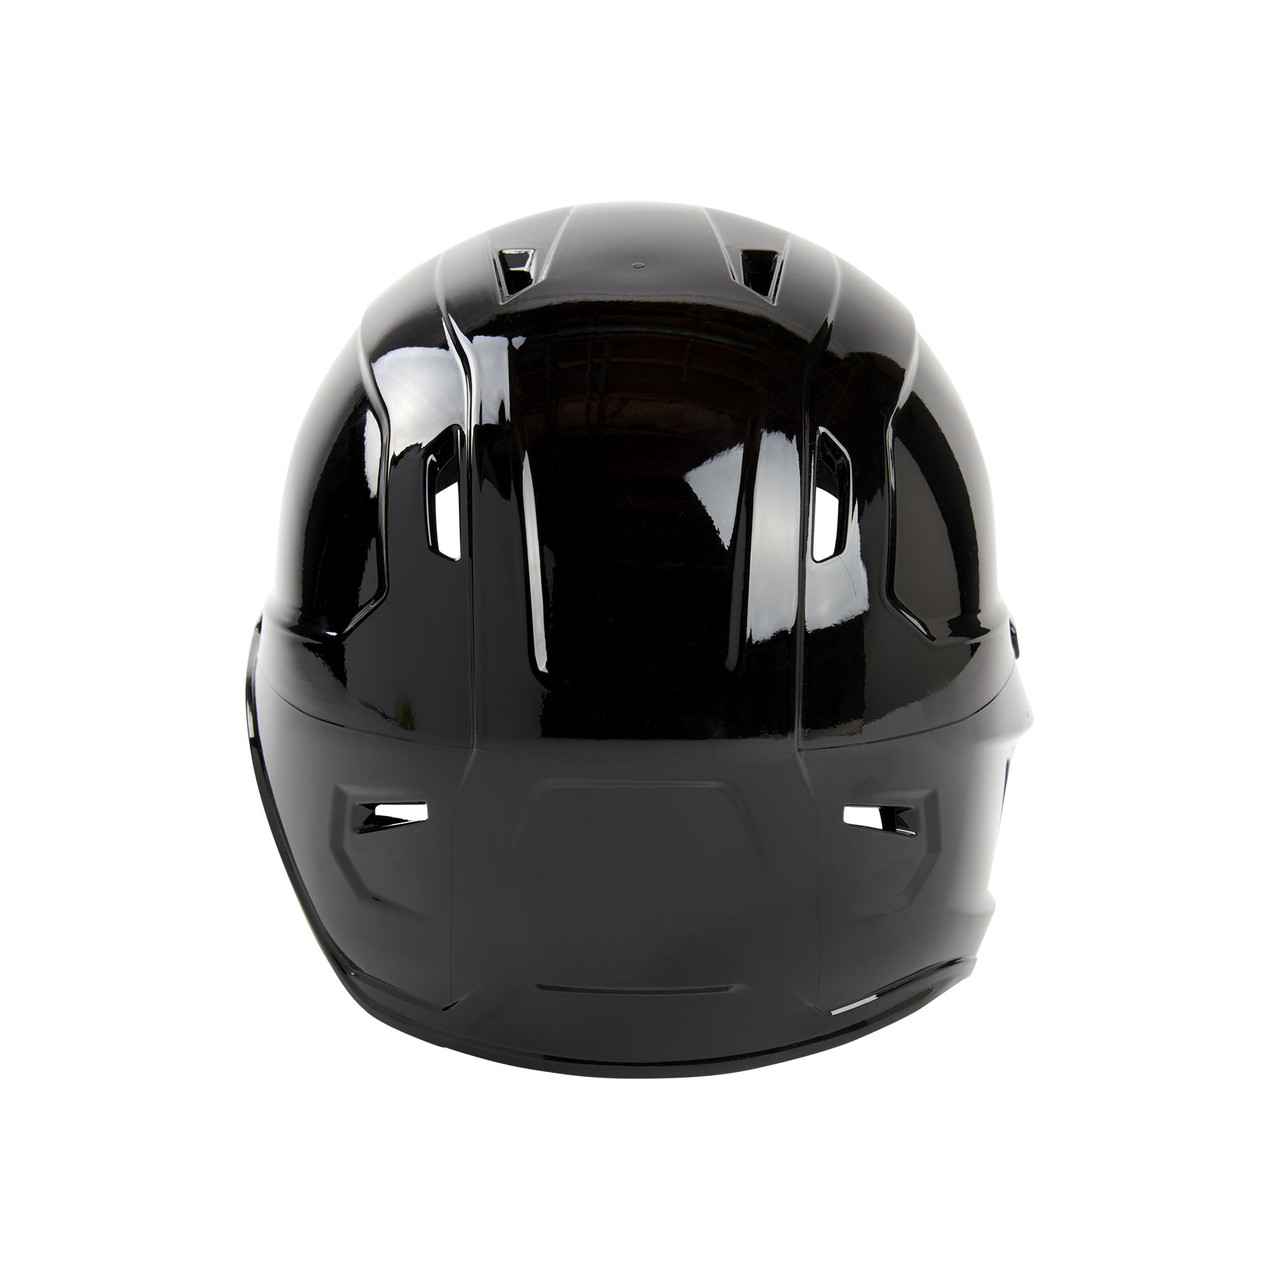 Rawlings Mach Single Ear Batting Helmet Special Edition